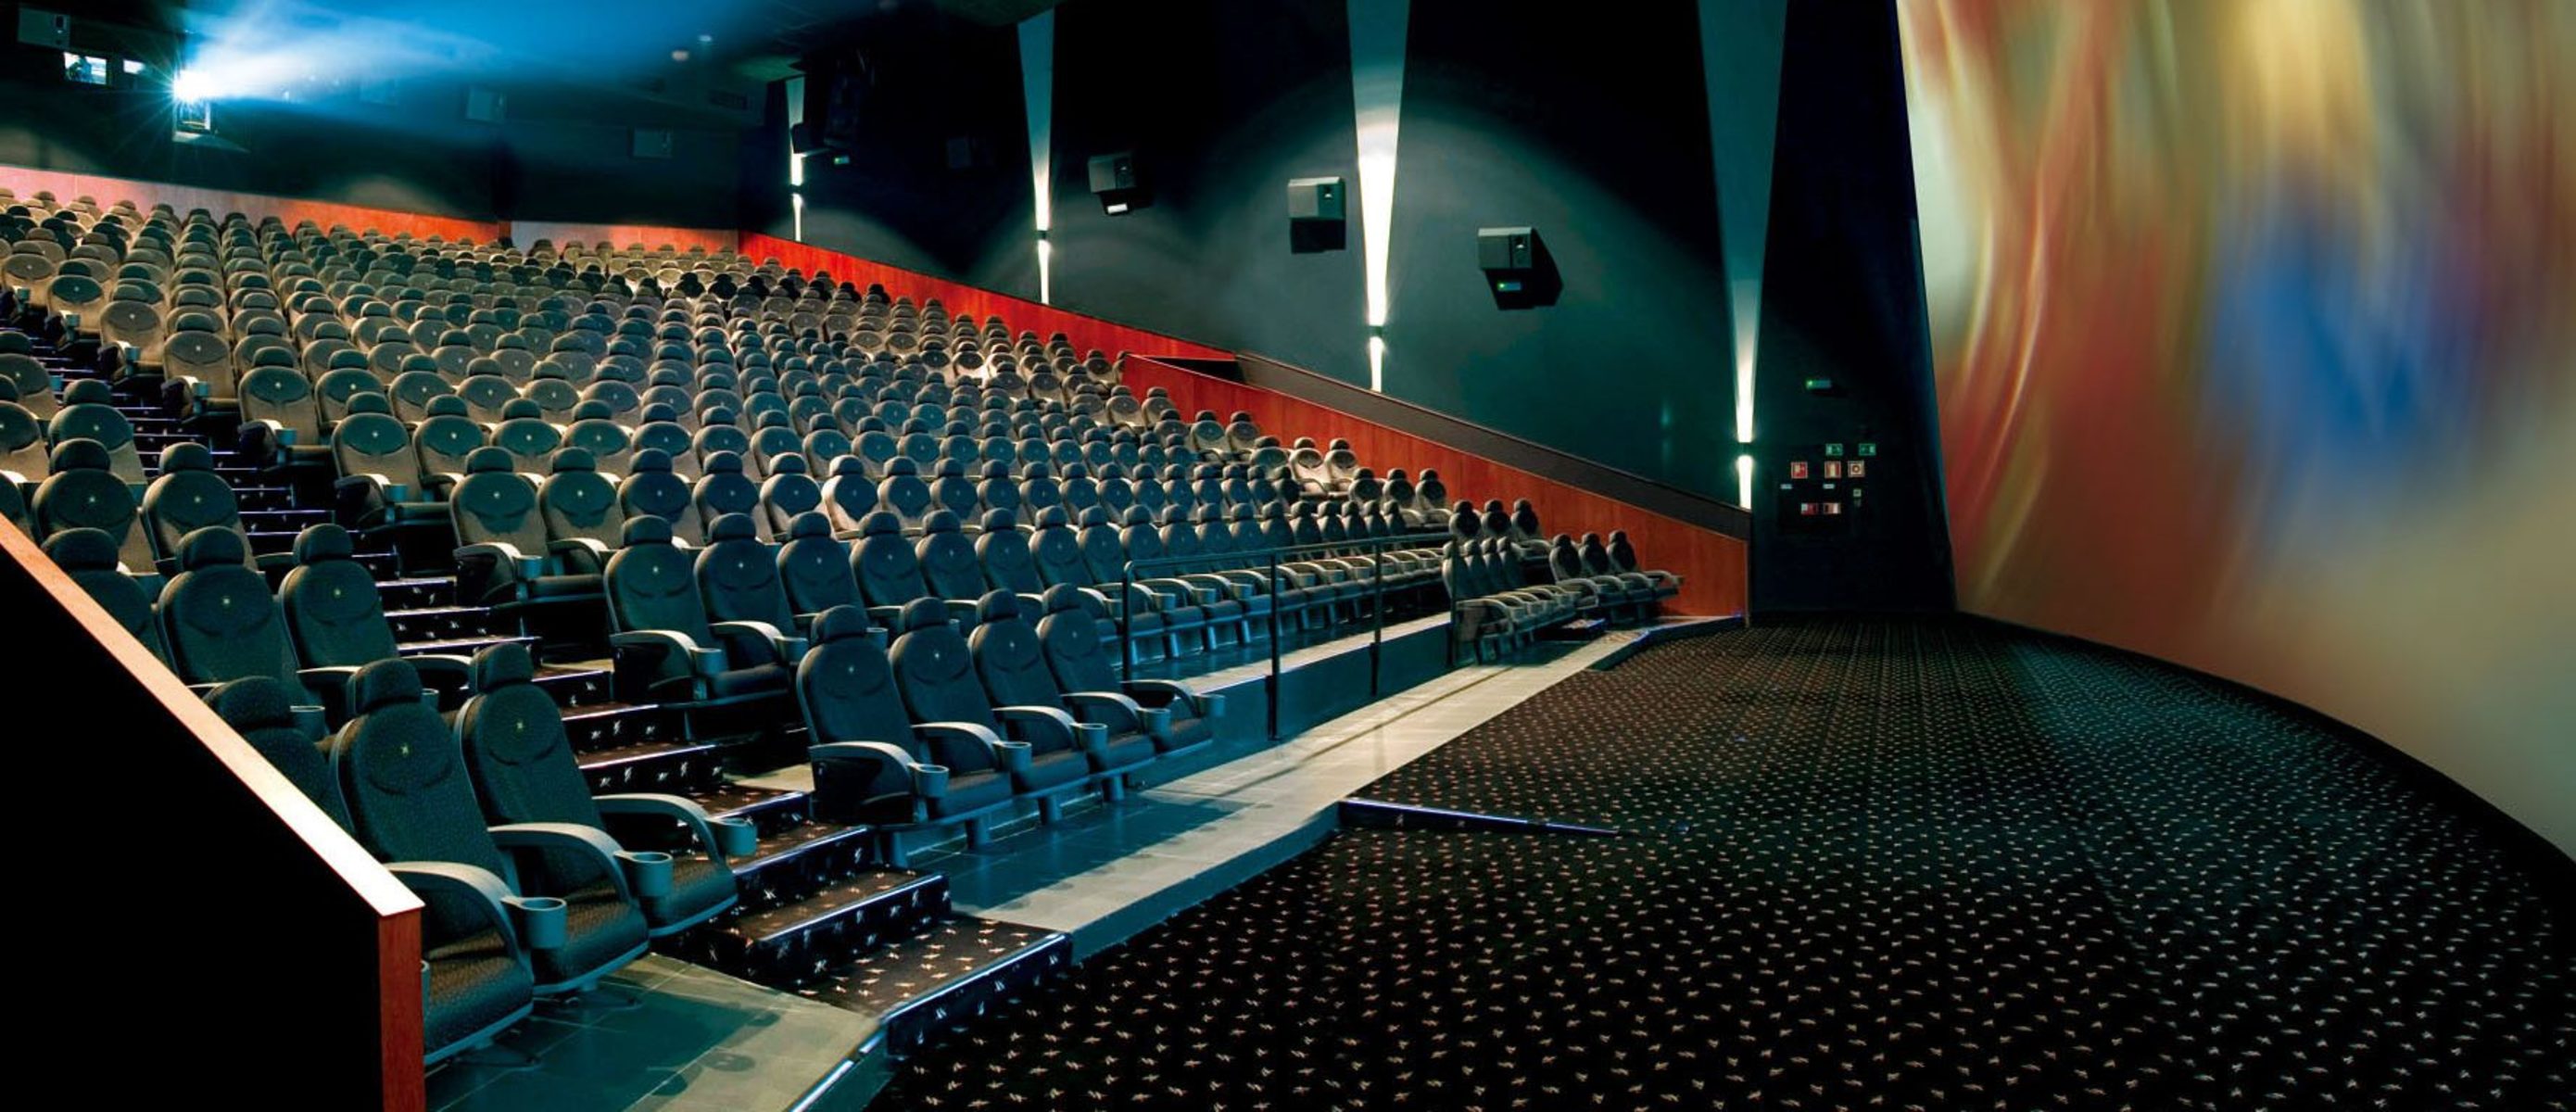 В кинотеатре есть три зала. Каро 13 IMAX. Синема парк белая дача зал IMAX. Кинотеатр Ставрополь IMAX Синема. Тула кинотеатр аймакс.